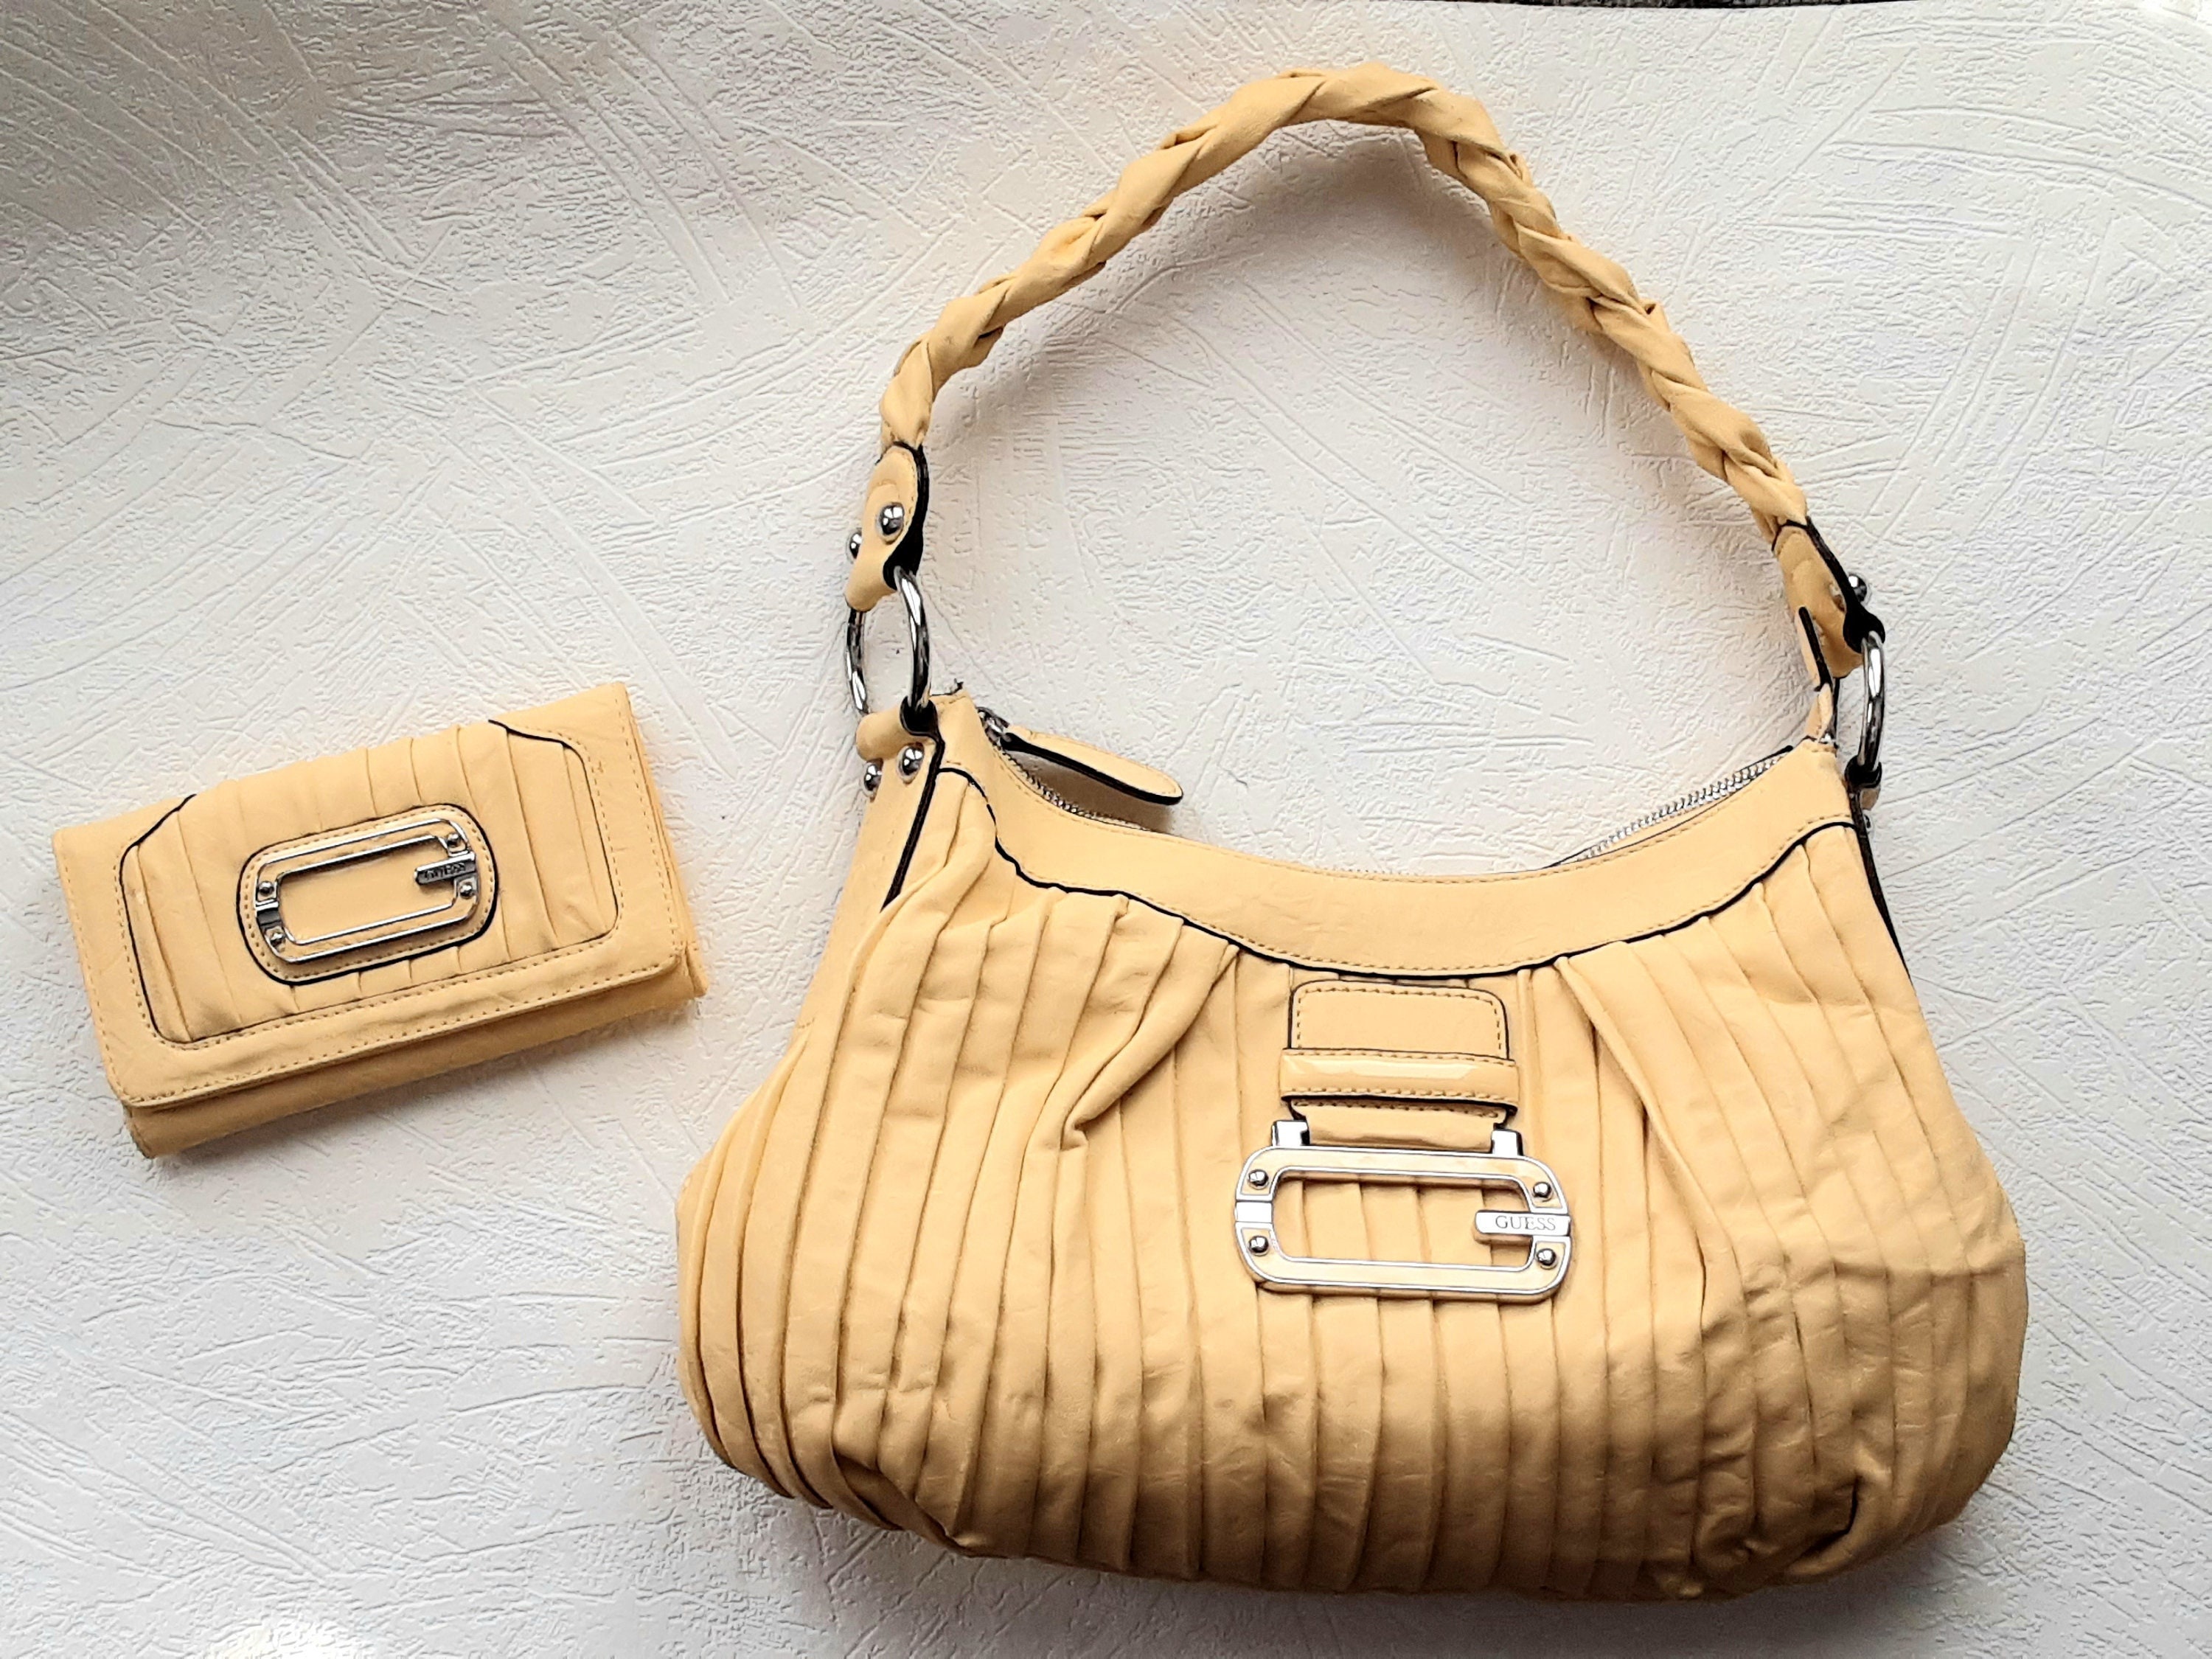 GUESS SHOULDER BAG (AUTHENTIC), Women's Fashion, Bags & Wallets